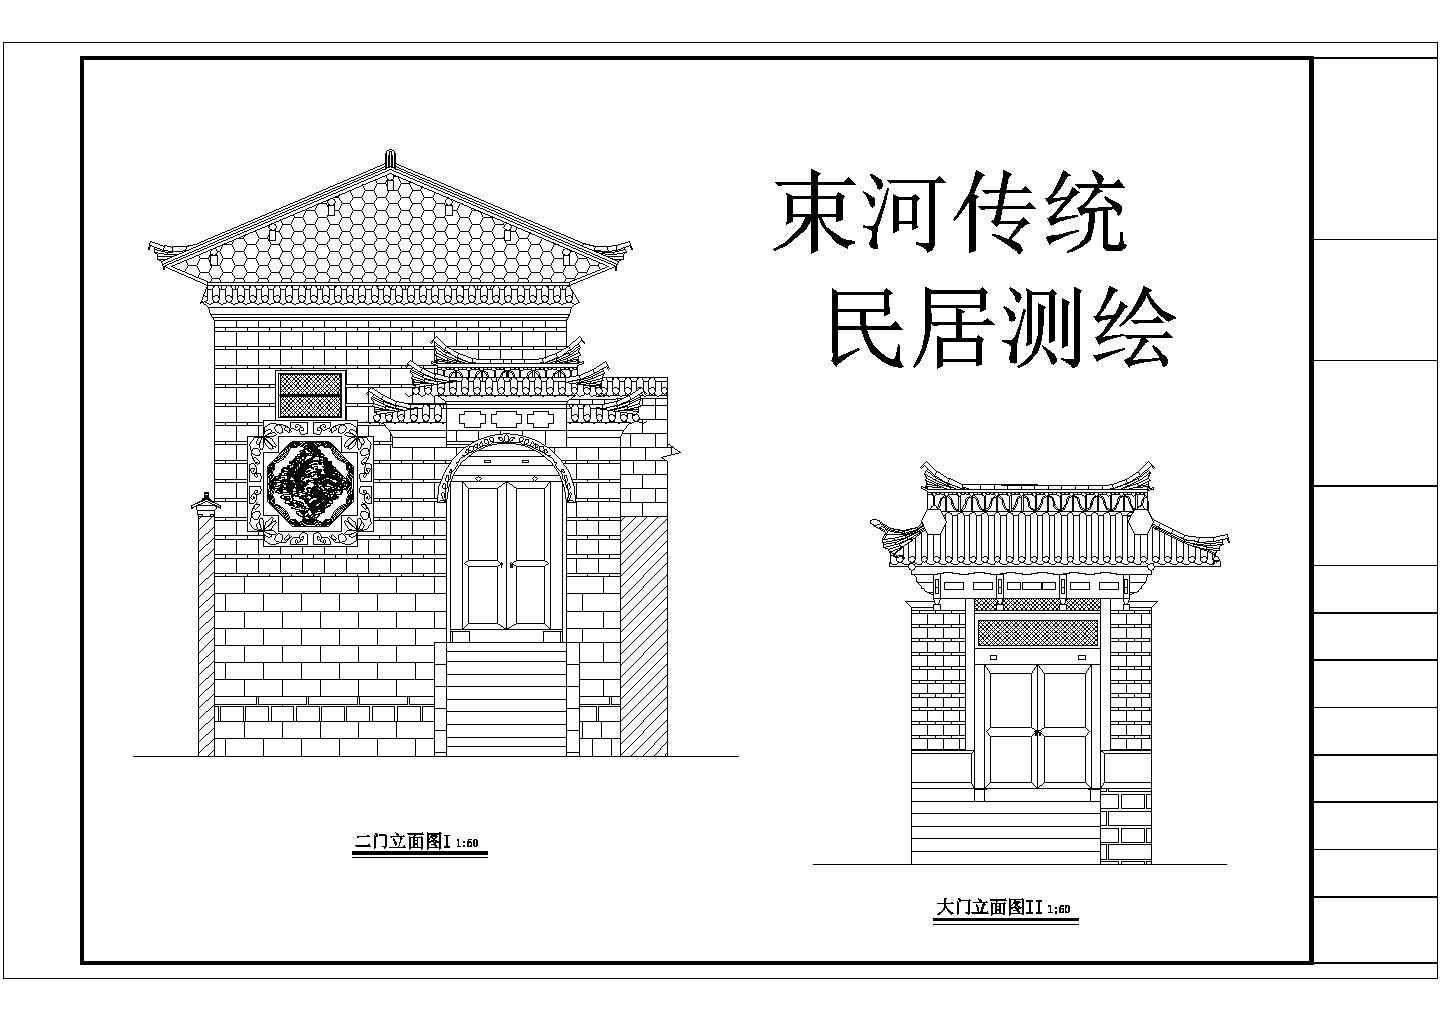 【云南】丽江某景区古建筑测绘设计施工图